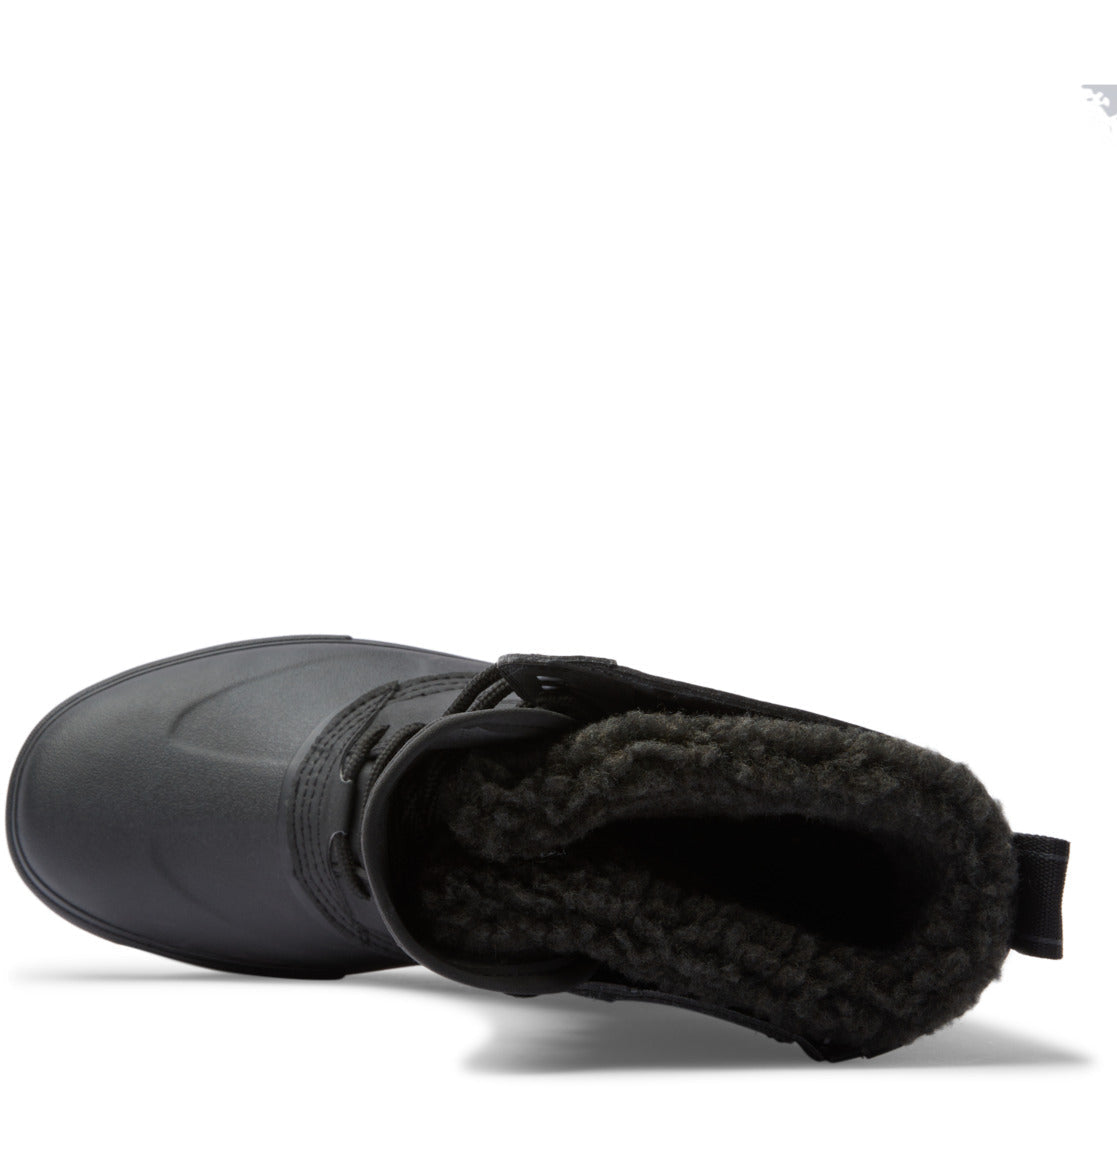 Men's DC Reach Water-Resistant Shoes